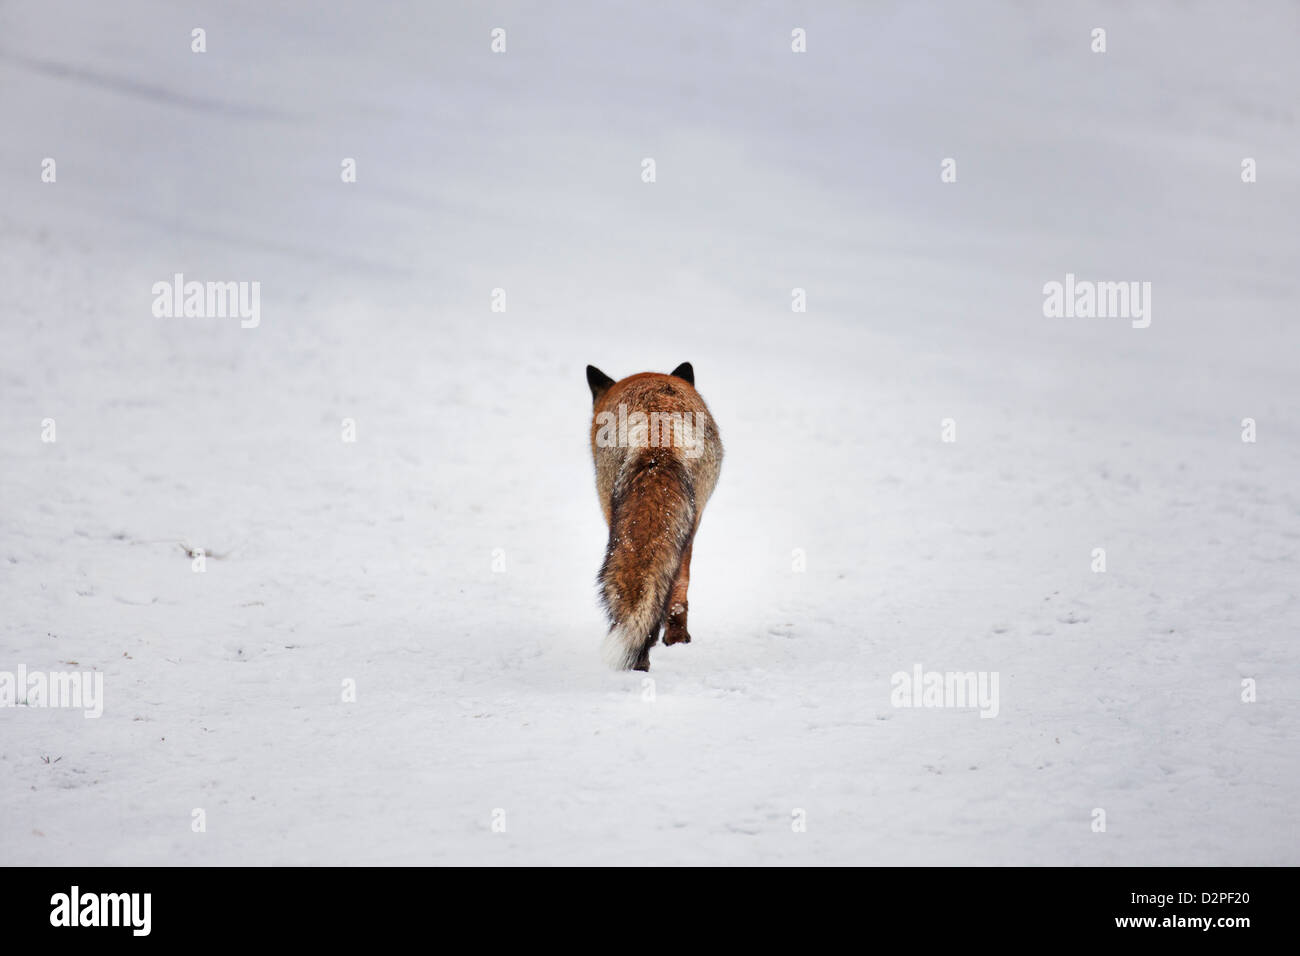 Dorso del Zorro Rojo (Vulpes vulpes) Caminar sobre pradera cubierta de nieve en invierno Foto de stock